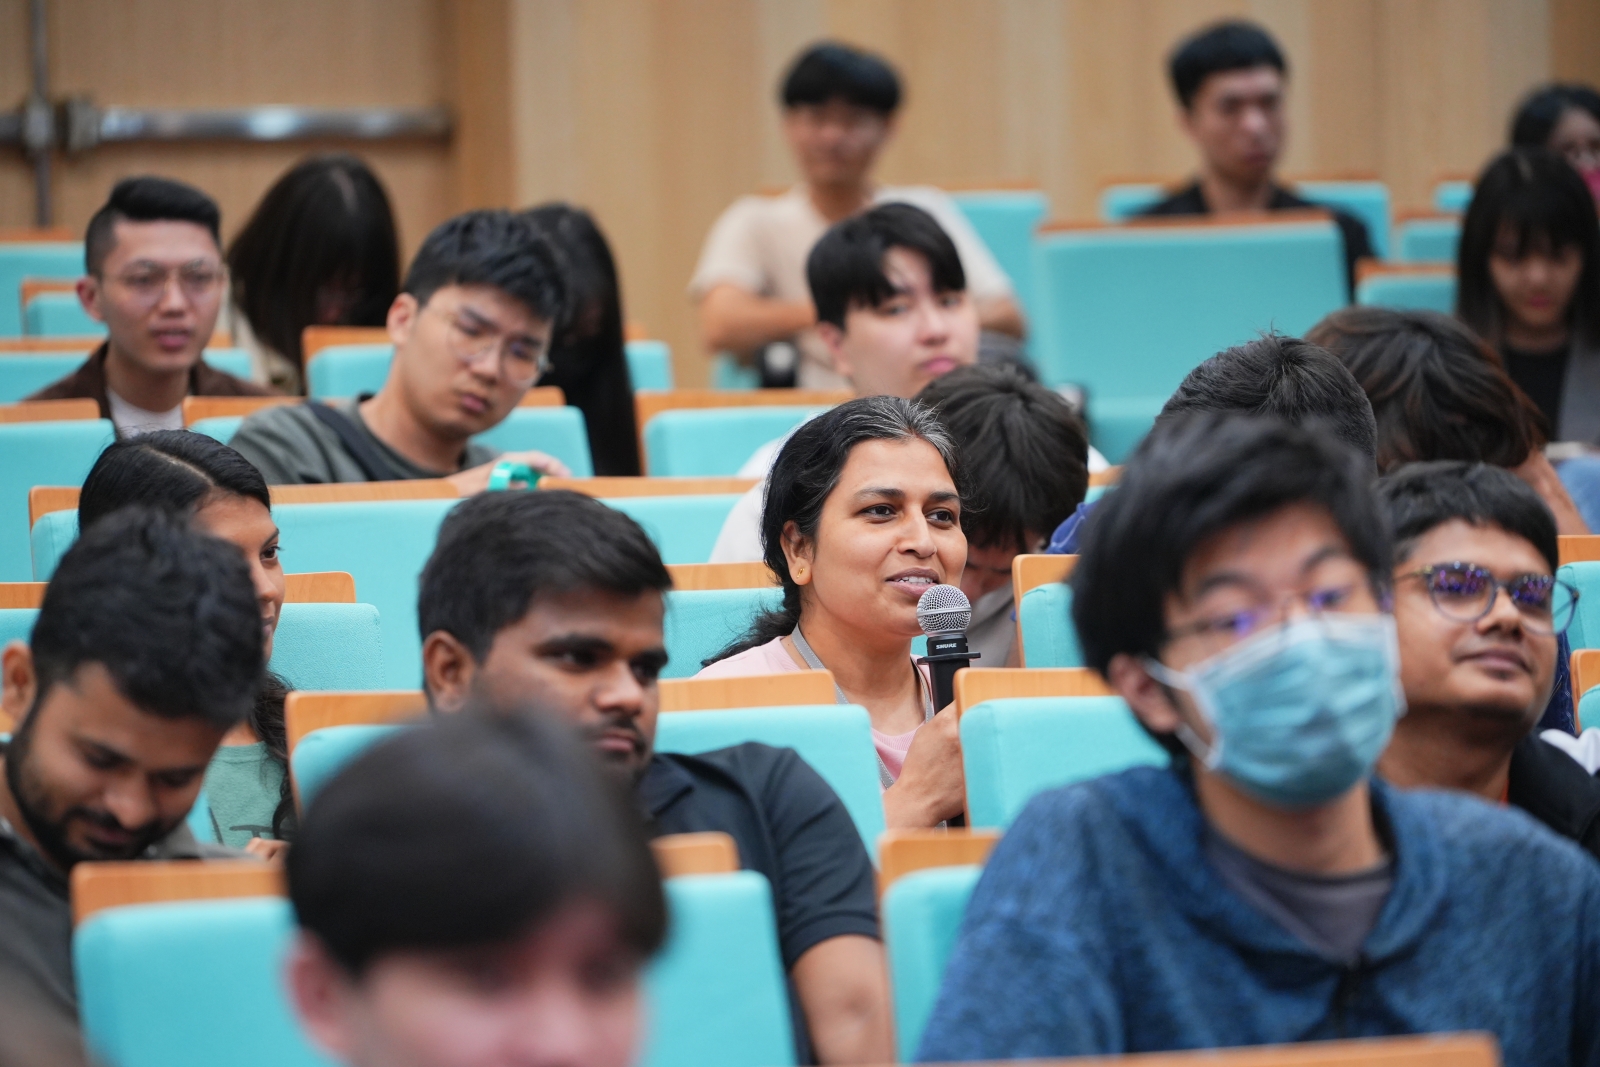 顧及現場眾多外籍生聽眾，李明哲董事長的演講以中英語交錯方式進行，其中分享為了管理南亞而苦學印度式英語的難忘經驗時，也讓現場不少印度學生會心一笑，在問與答環節時踴躍提問